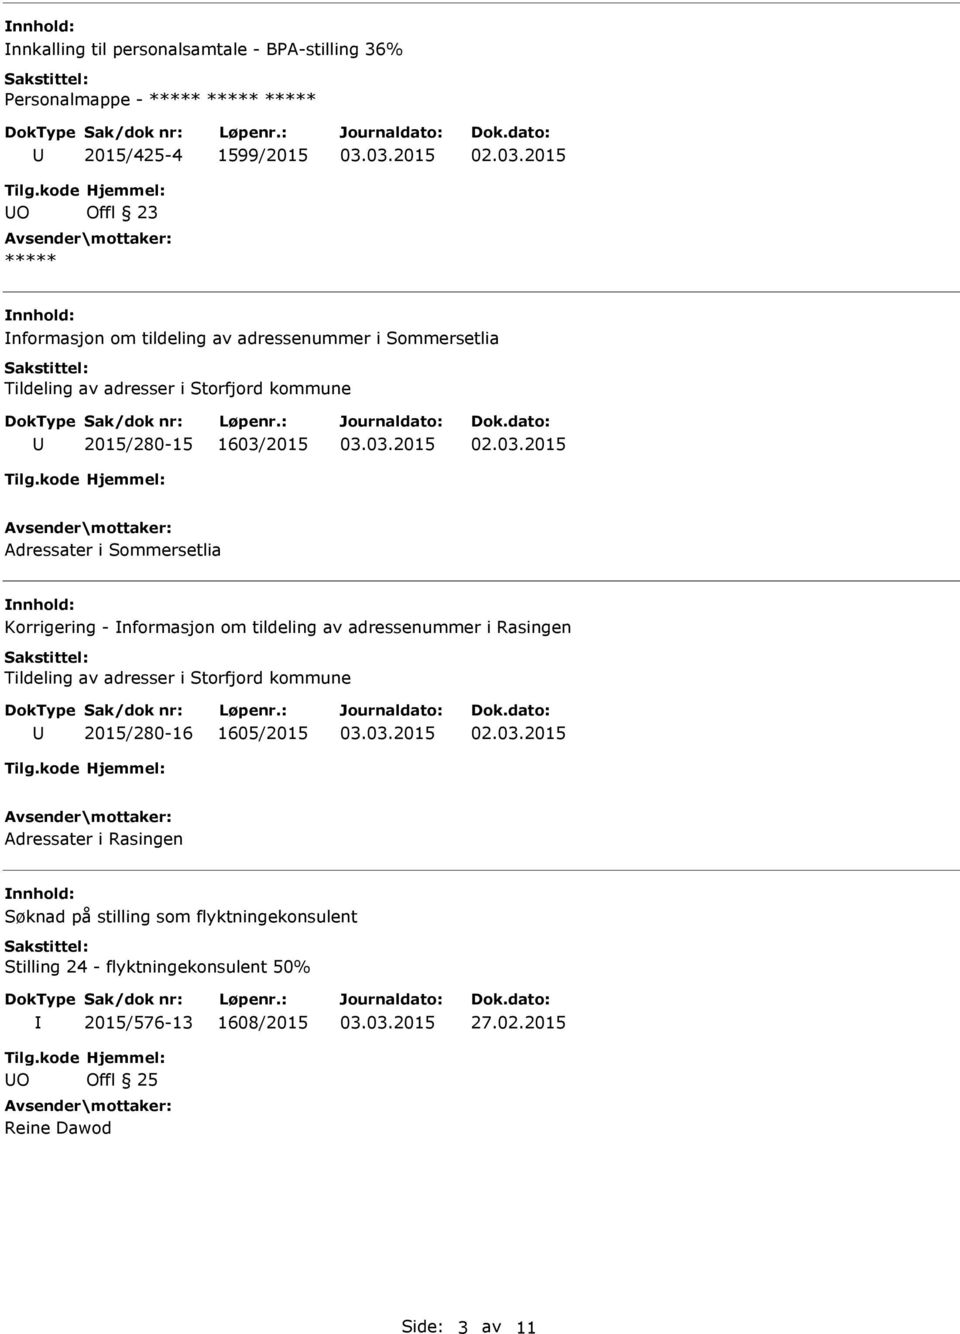 om tildeling av adressenummer i Rasingen Tildeling av adresser i Storfjord kommune 2015/280-16 1605/2015 Adressater i Rasingen